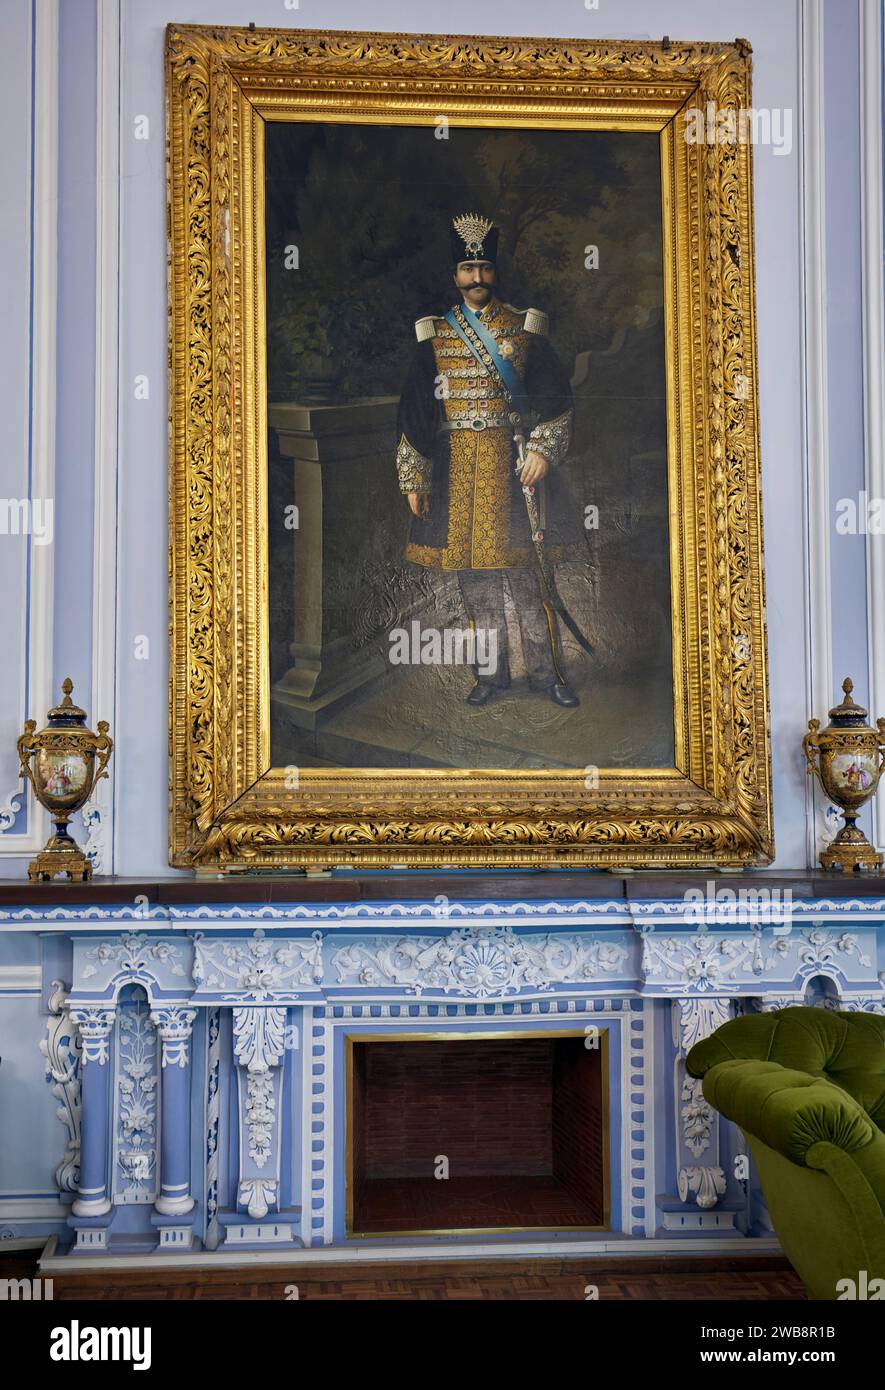 Portrait de Shah Nasser ed DIN en robe royale affichée dans la salle d'Ivoire du palais du Golestan, résidence royale de la dynastie Qajar. Téhéran, Iran. Banque D'Images